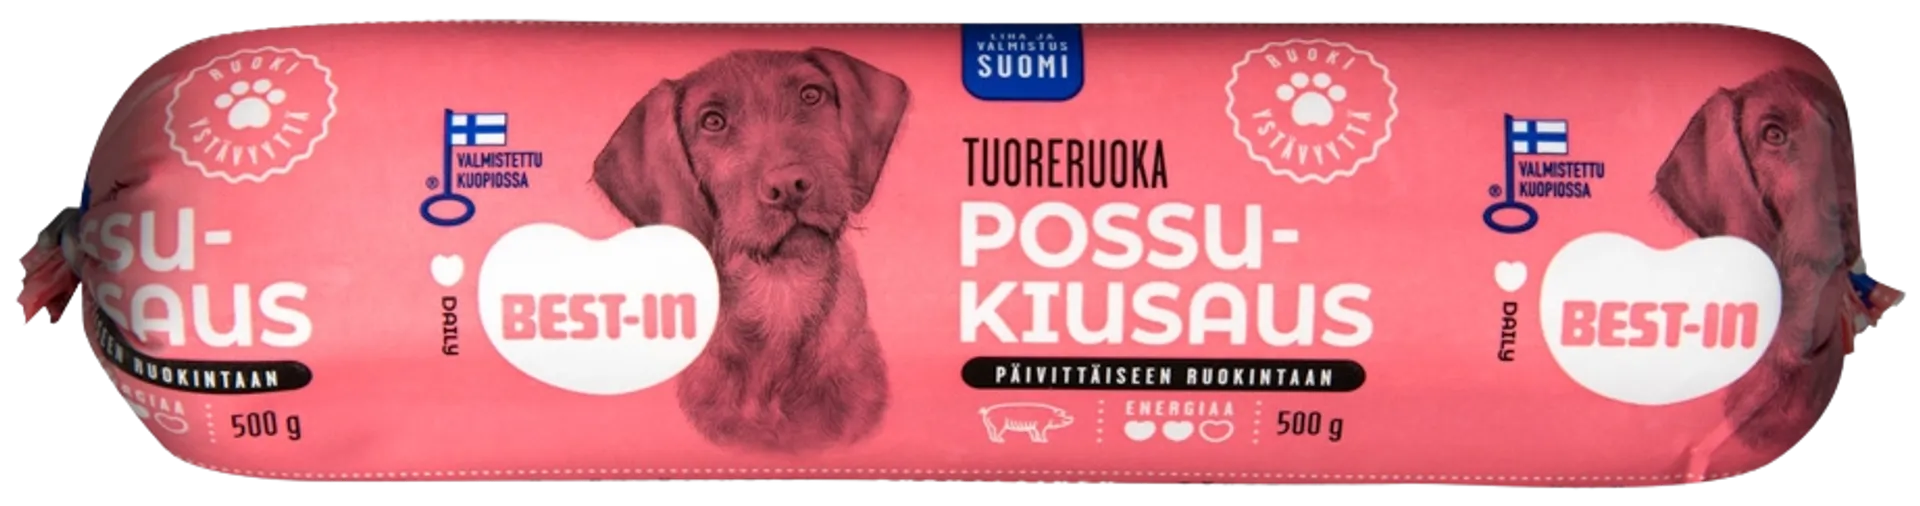 Best-In Possukiusaus Koiran Tuoreruoka 500g